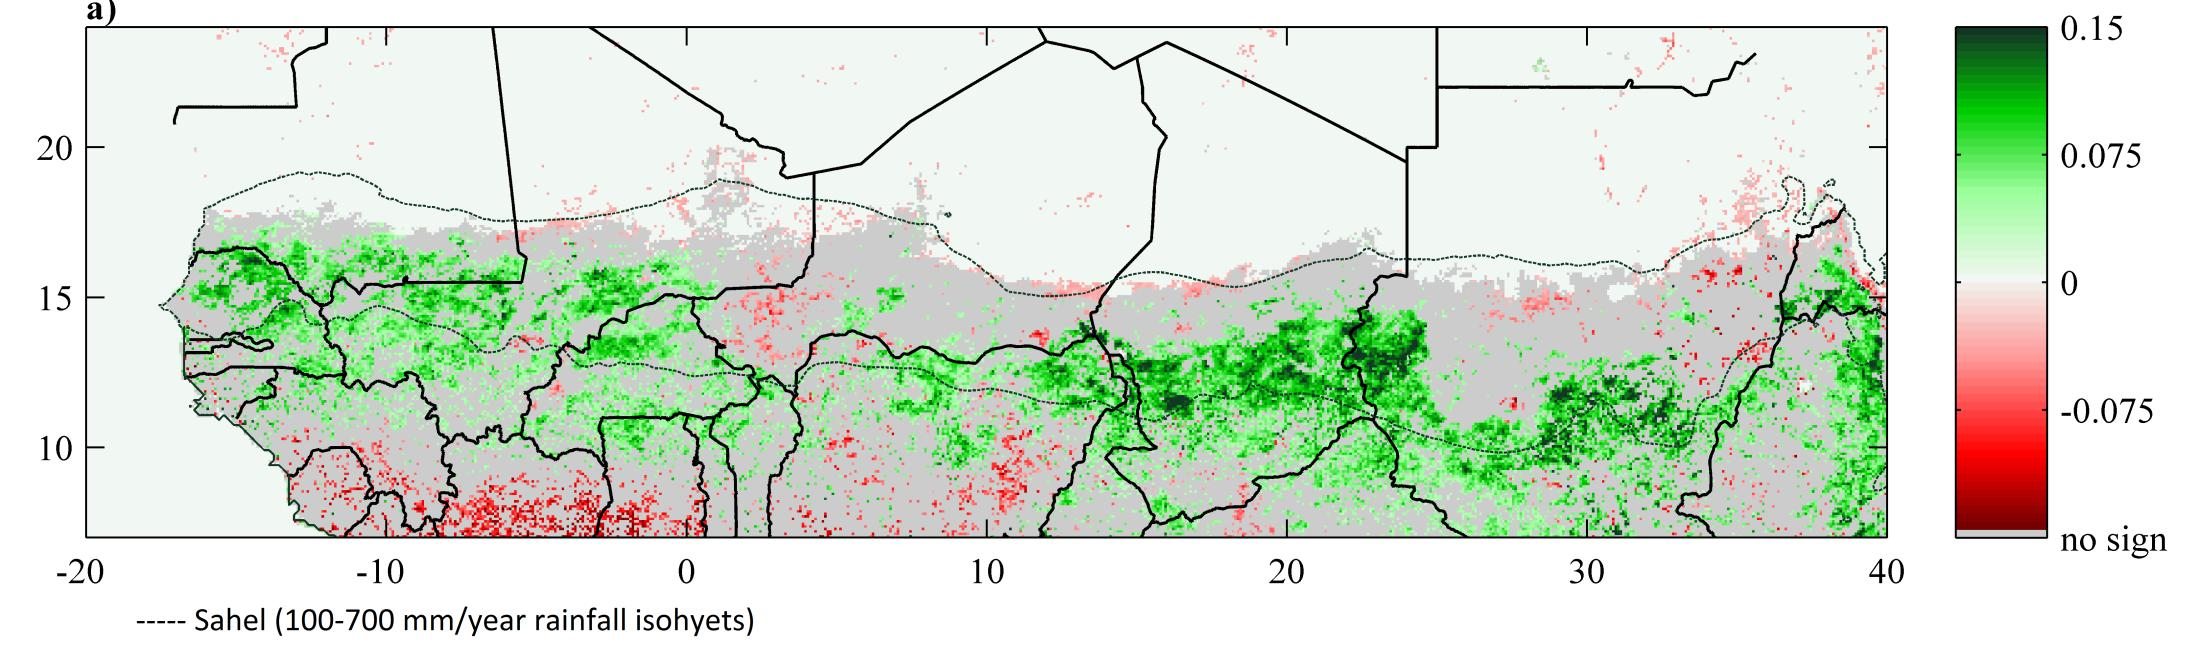 TENDANCES NDVI GIMMS-3G 1981-2011 Tendances au reverdissement observées sur la quasi-totalité du Sahel, sur l ensemble de la